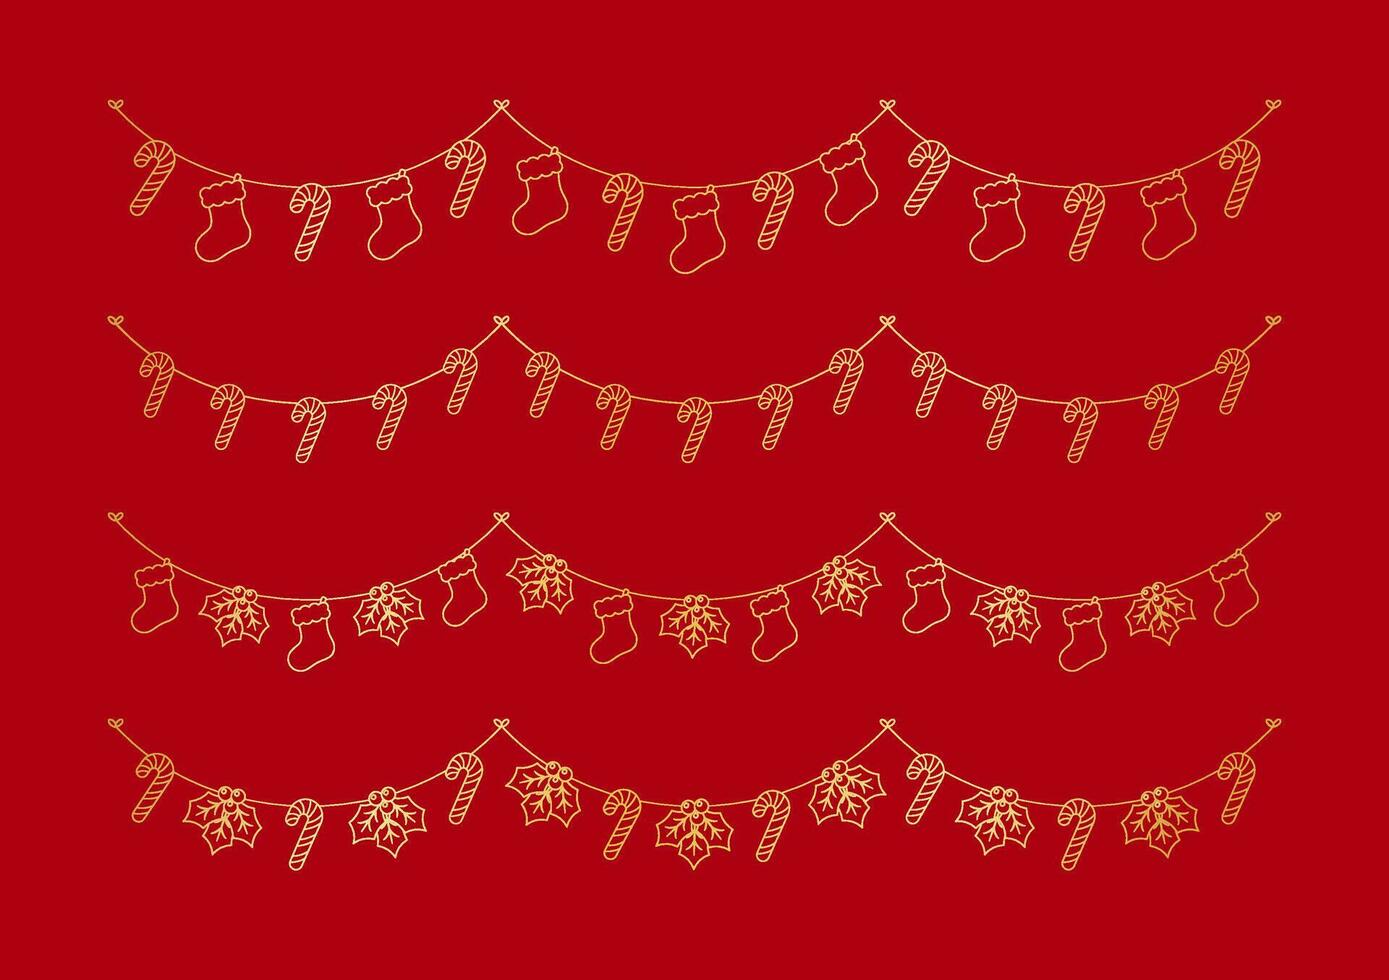 reeks van goud Kerstmis en winter decoratie slinger schets tekening. vakantie decoratie elementen verzameling. de kerstman kousen, maretak, ornamenten, snoep riet. vector illustratie.